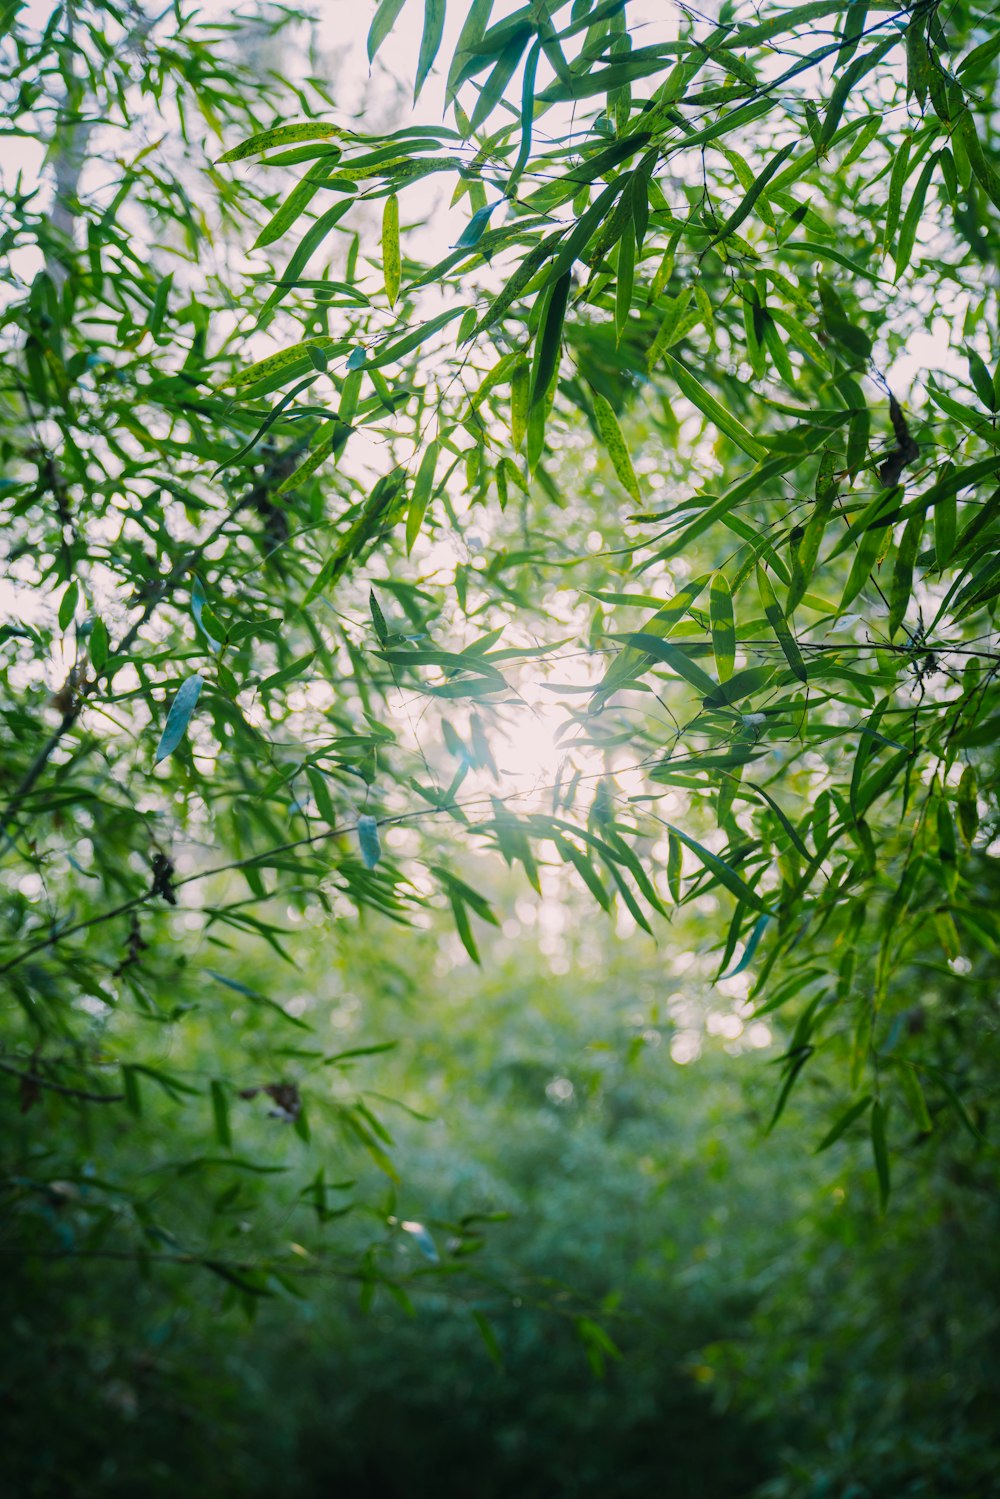 El sol brilla a través de las hojas de un árbol de bambú